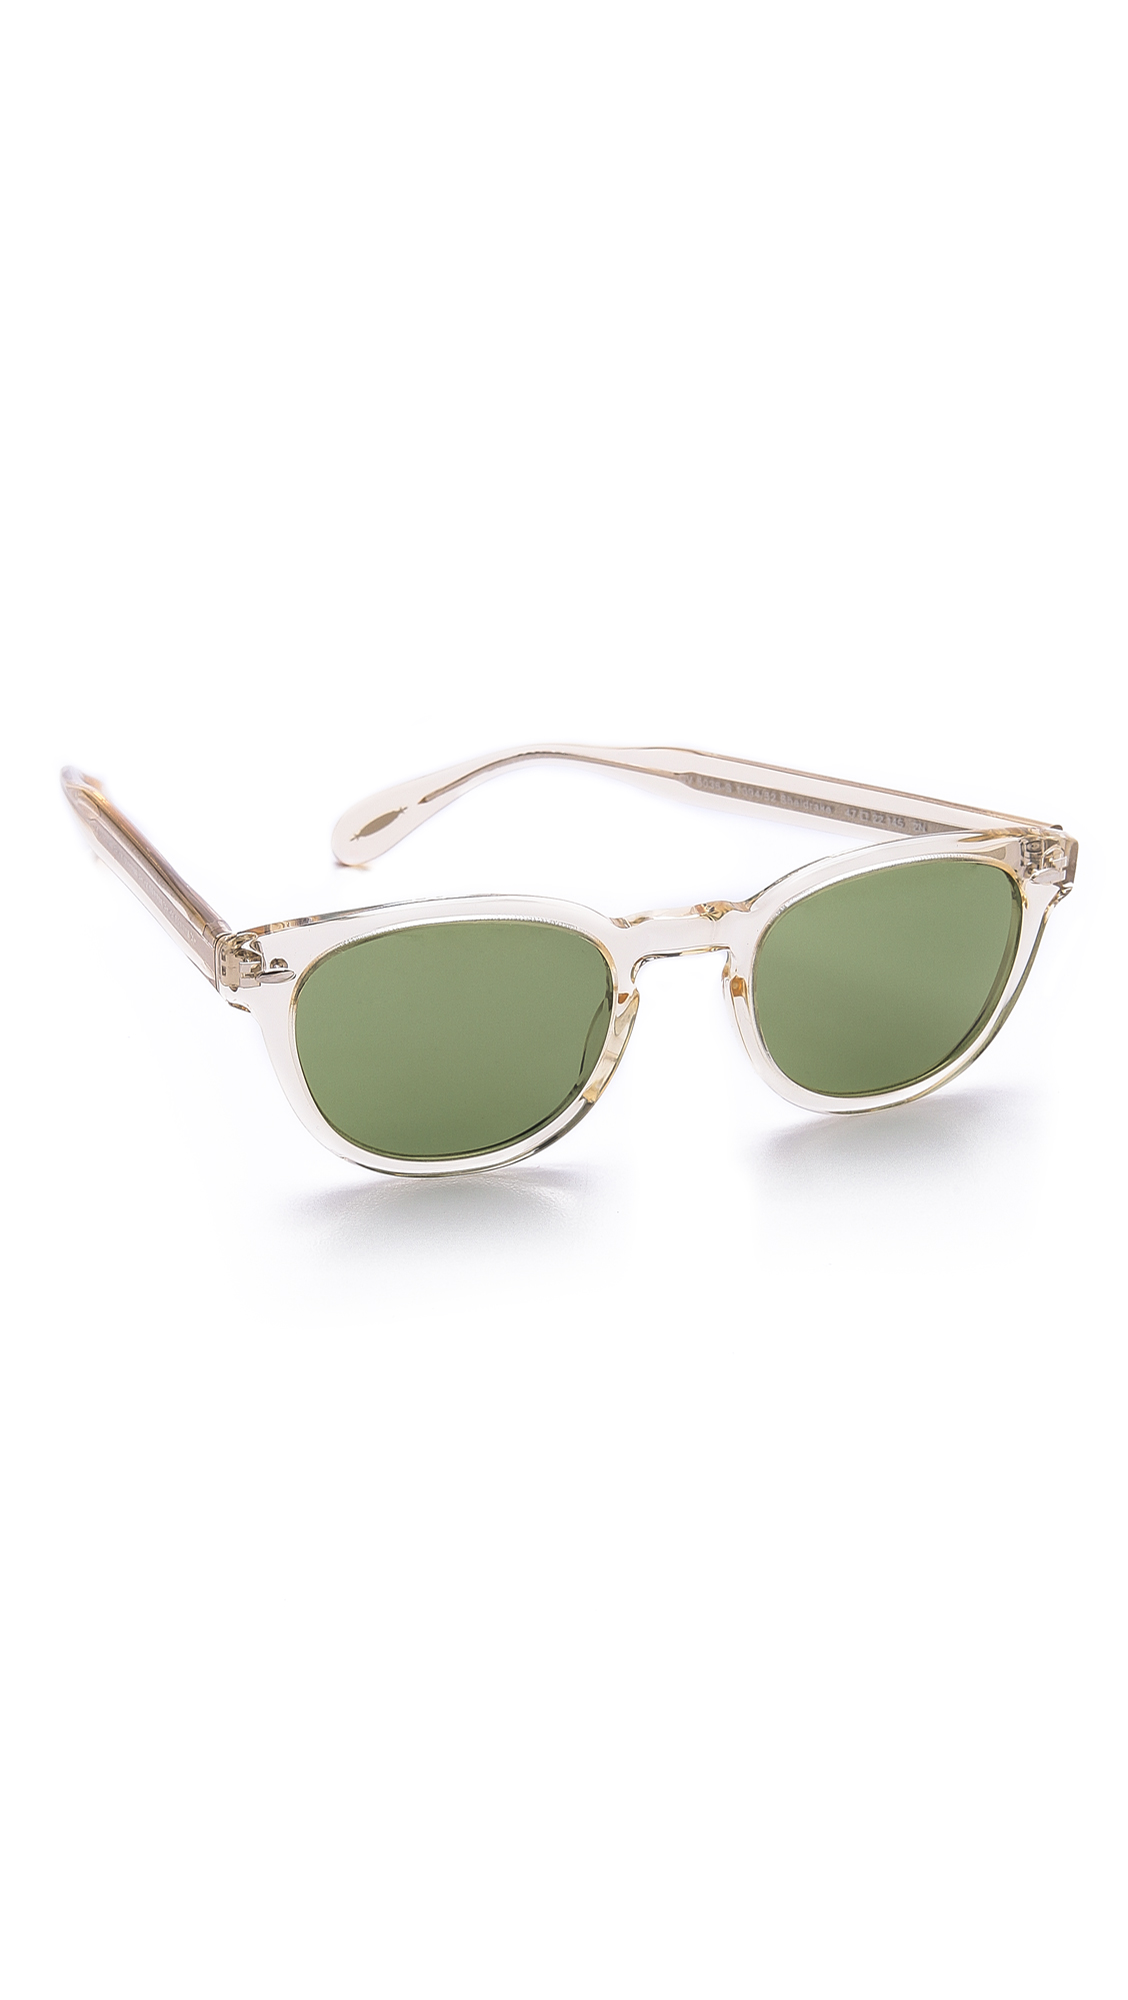 Oliver Peoples Sheldrake Sunglasses in Natural for Men - Lyst